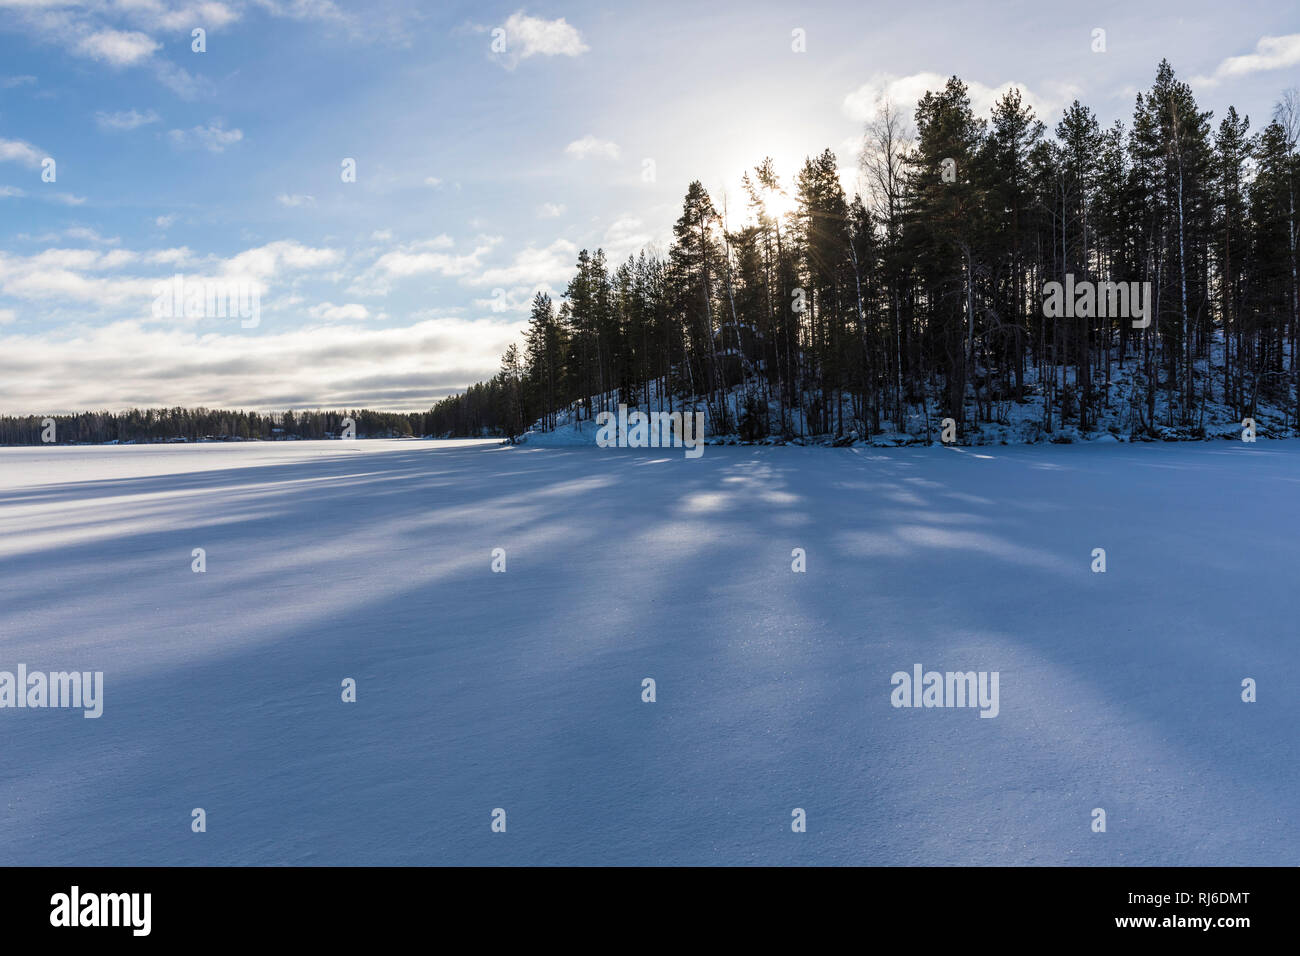 Finnland, Saimaa-Gebiet, Schneedecke mit Sonne und Schatten Banque D'Images